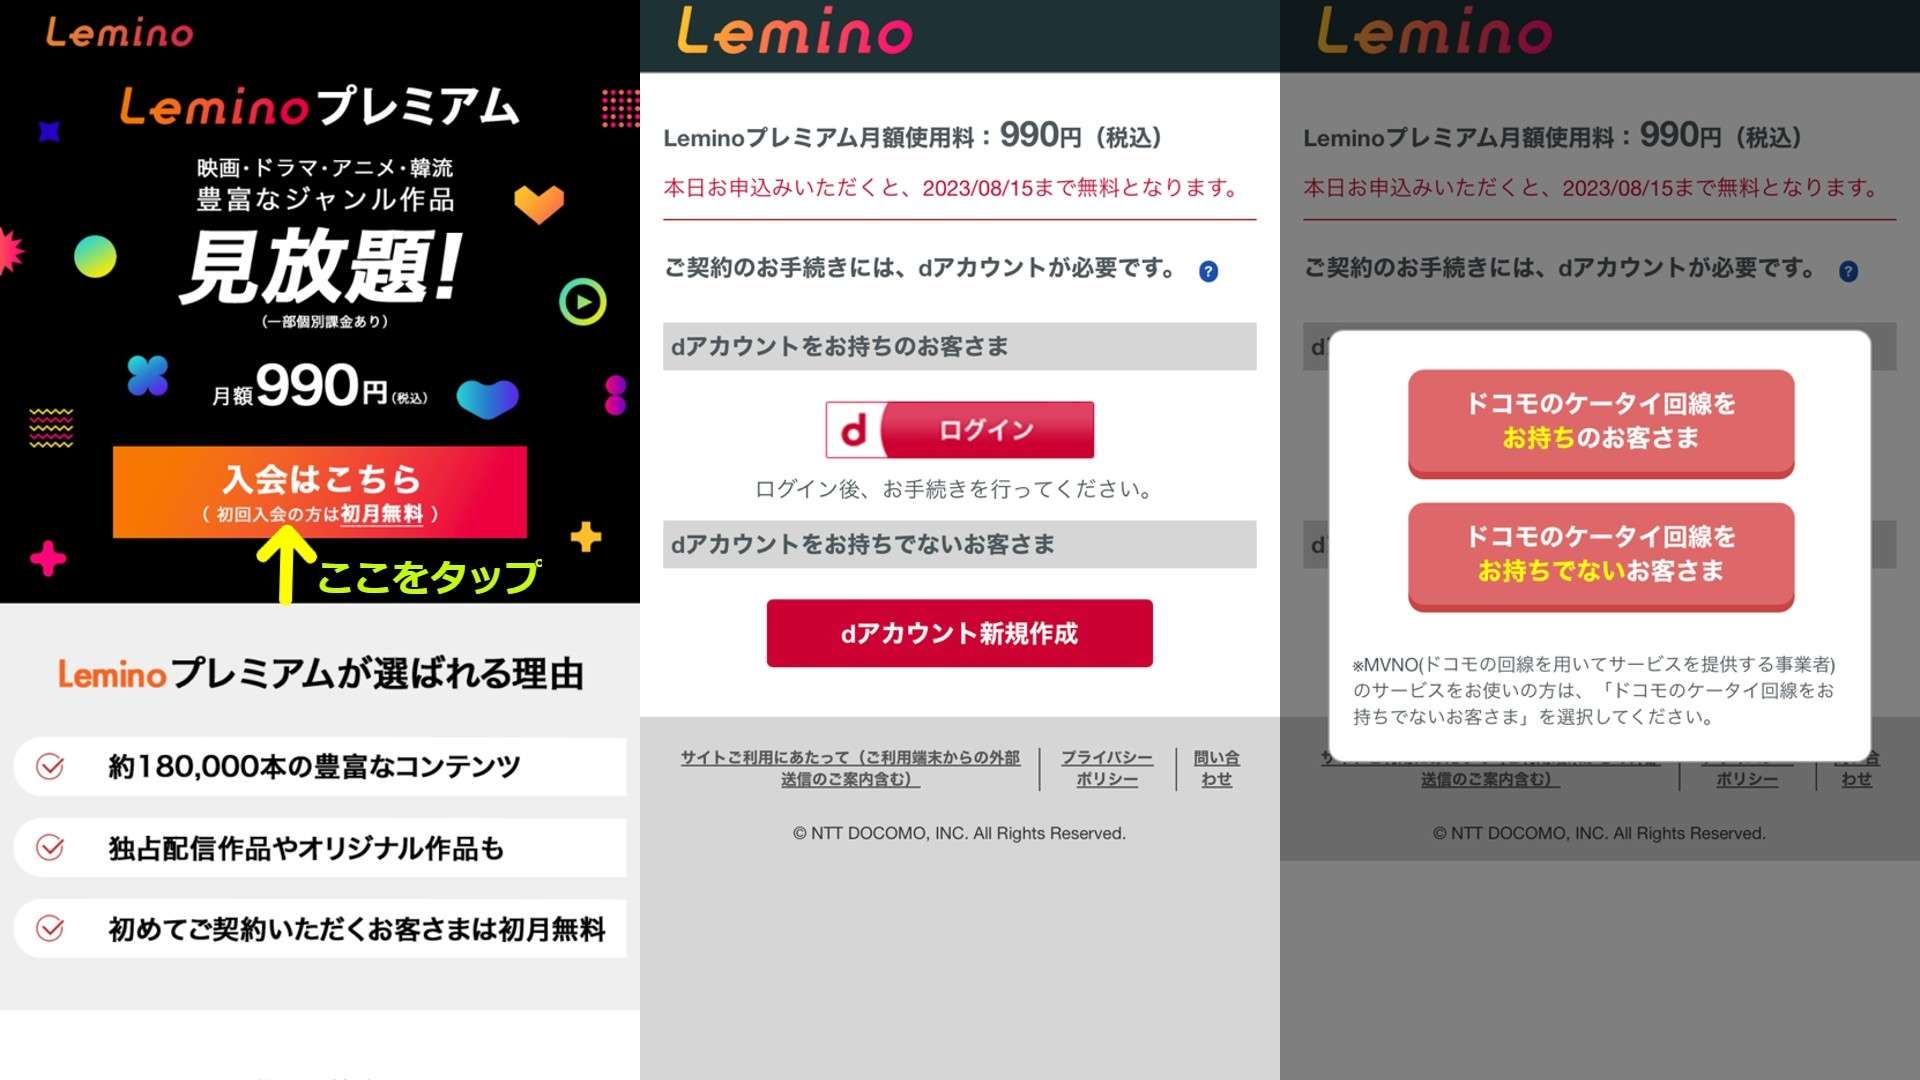 lemino premium join